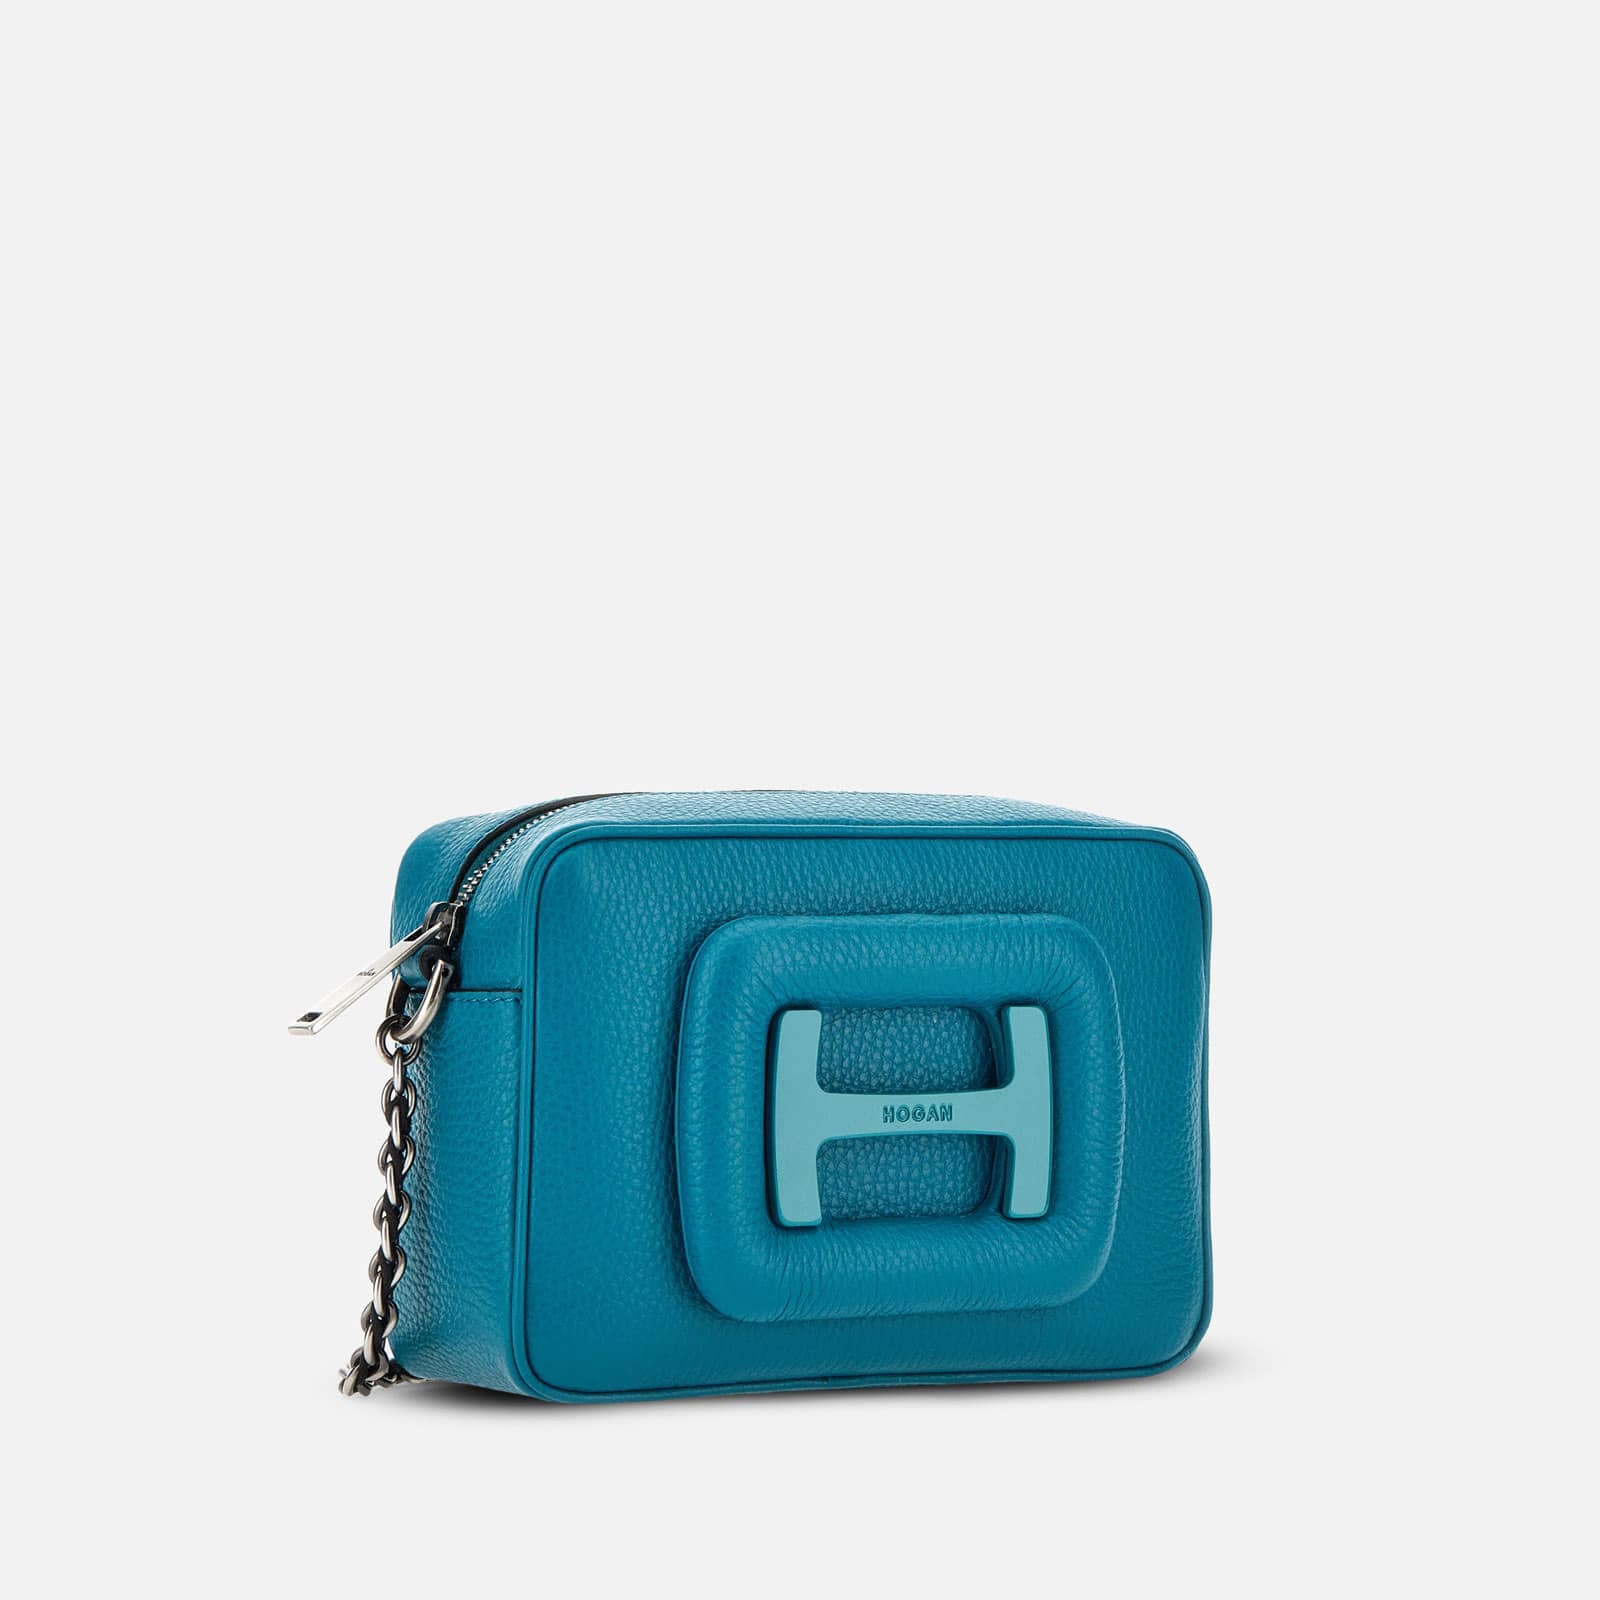 Hogan H-Bag Camera Bag Small Light Blue - 3